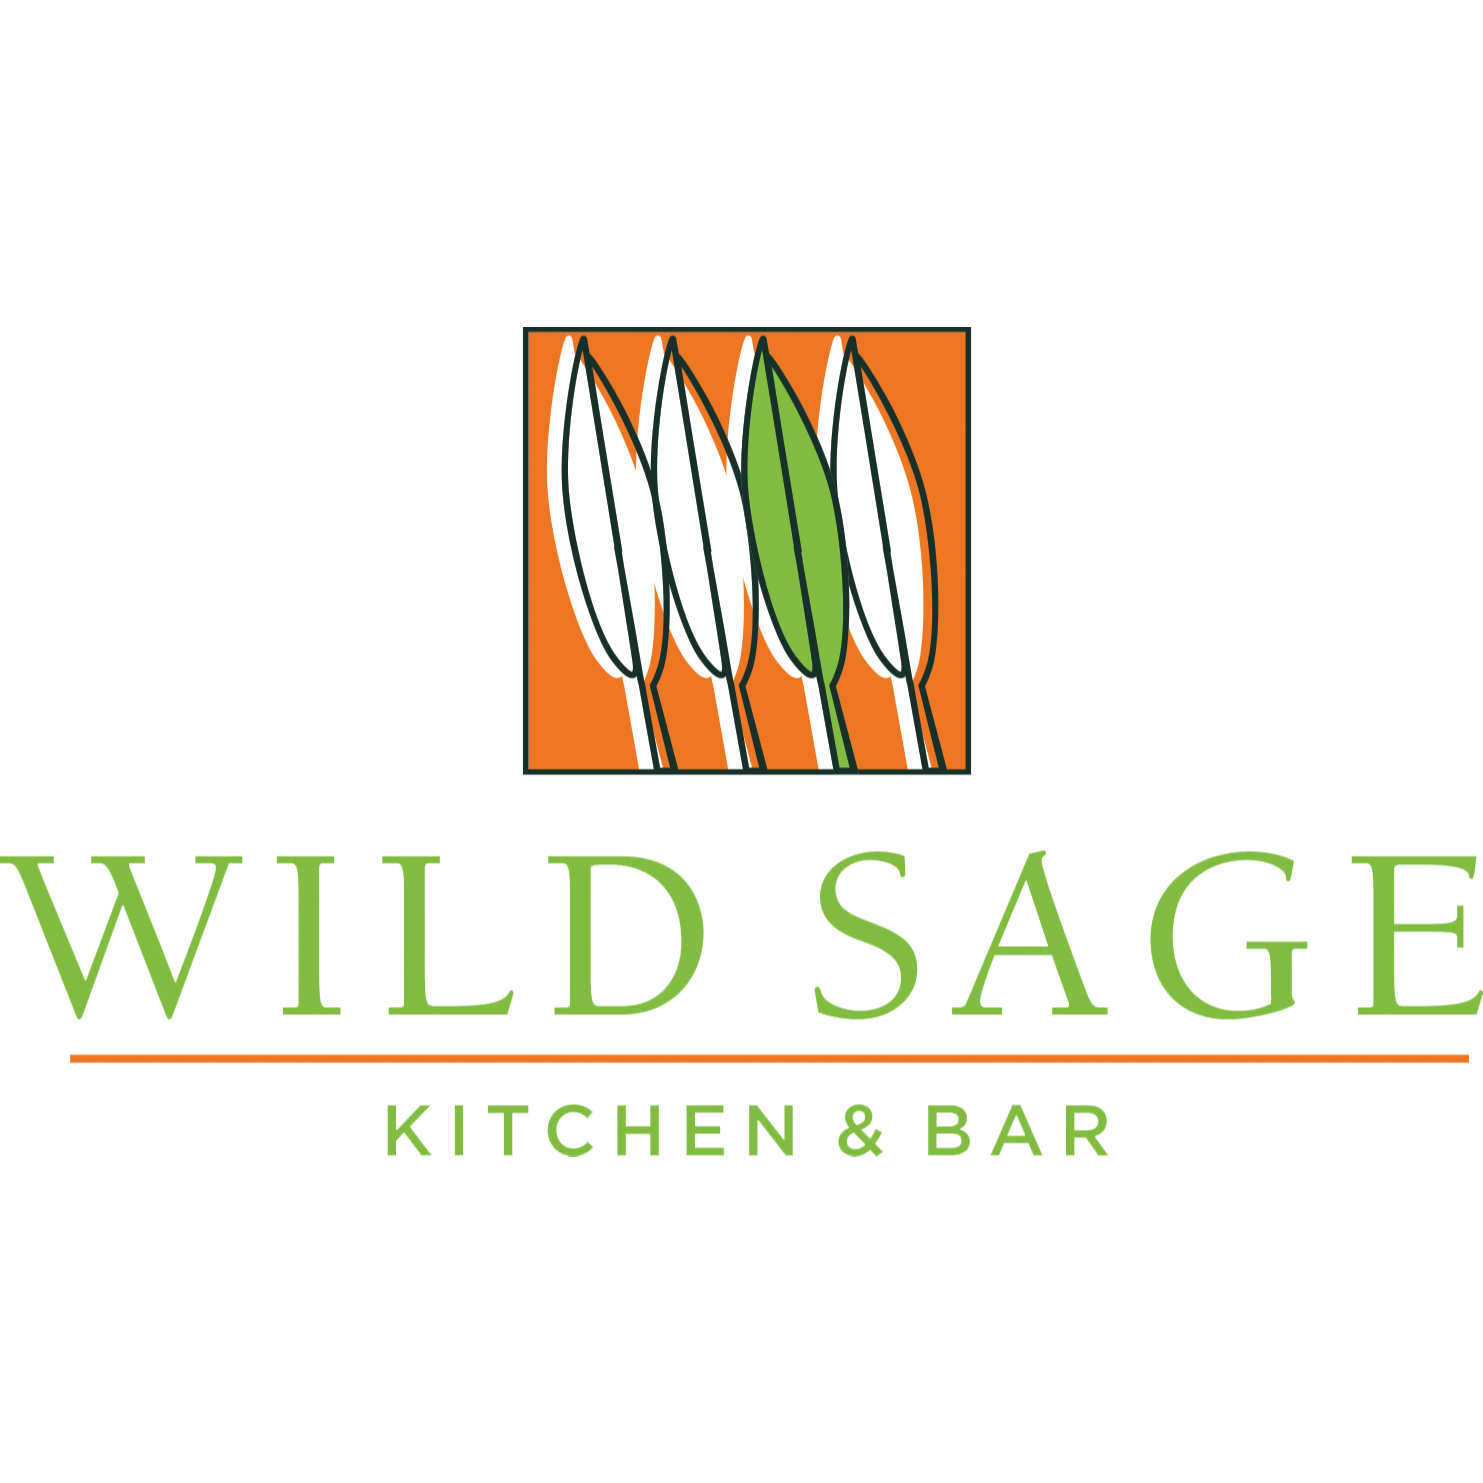 Wild Sage Kitchen & Bar Regina (306)525-7570